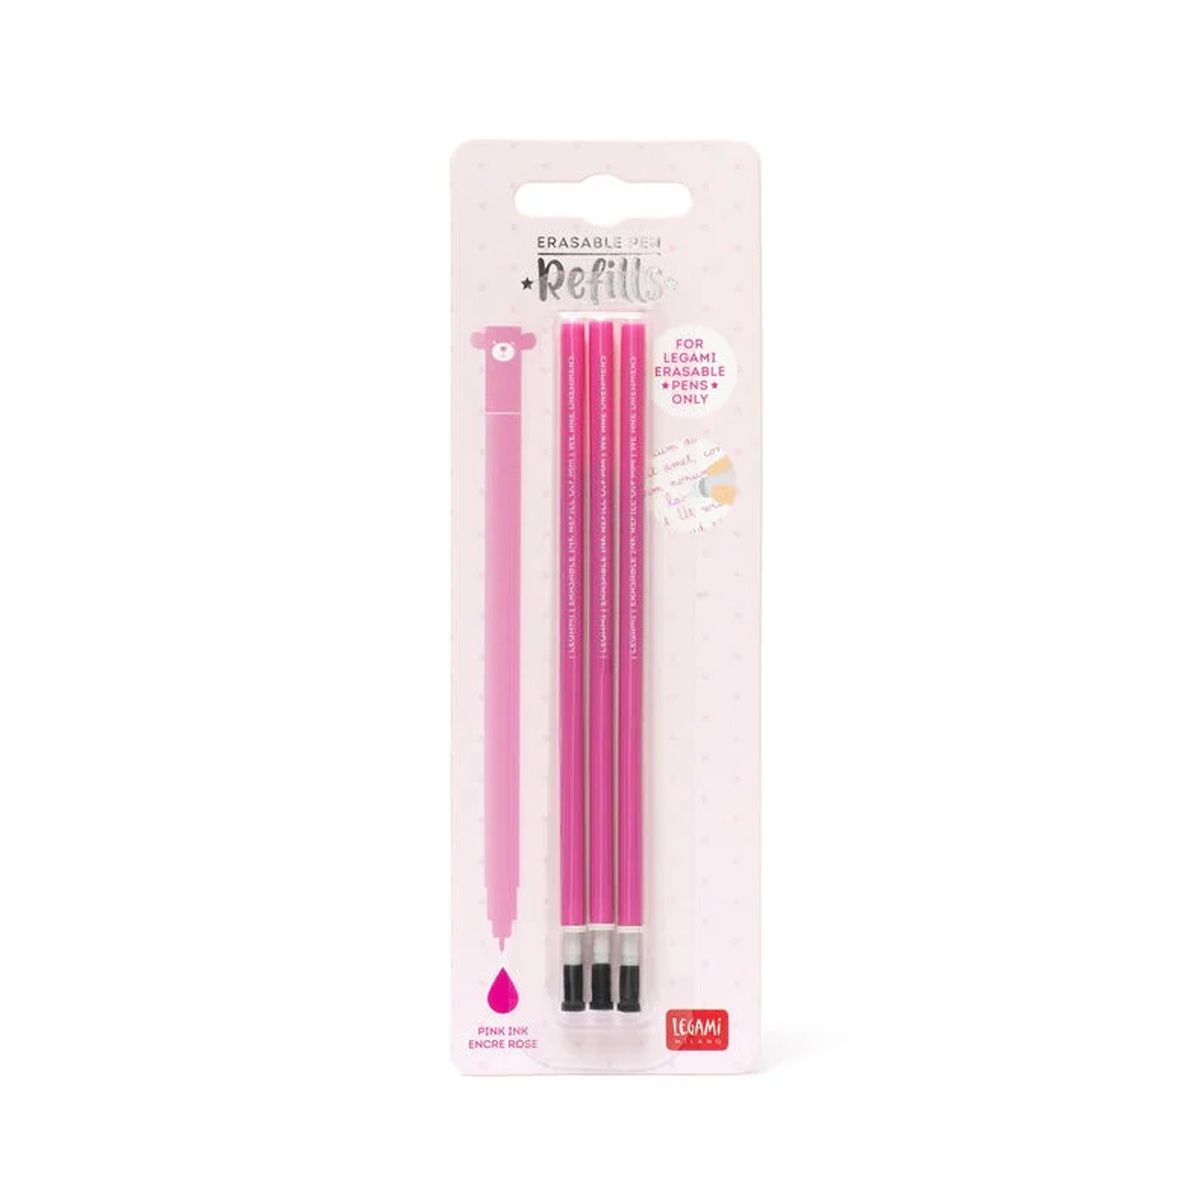 3 Ersatzminen für löschbaren Gelstift - Erasable Pen pink